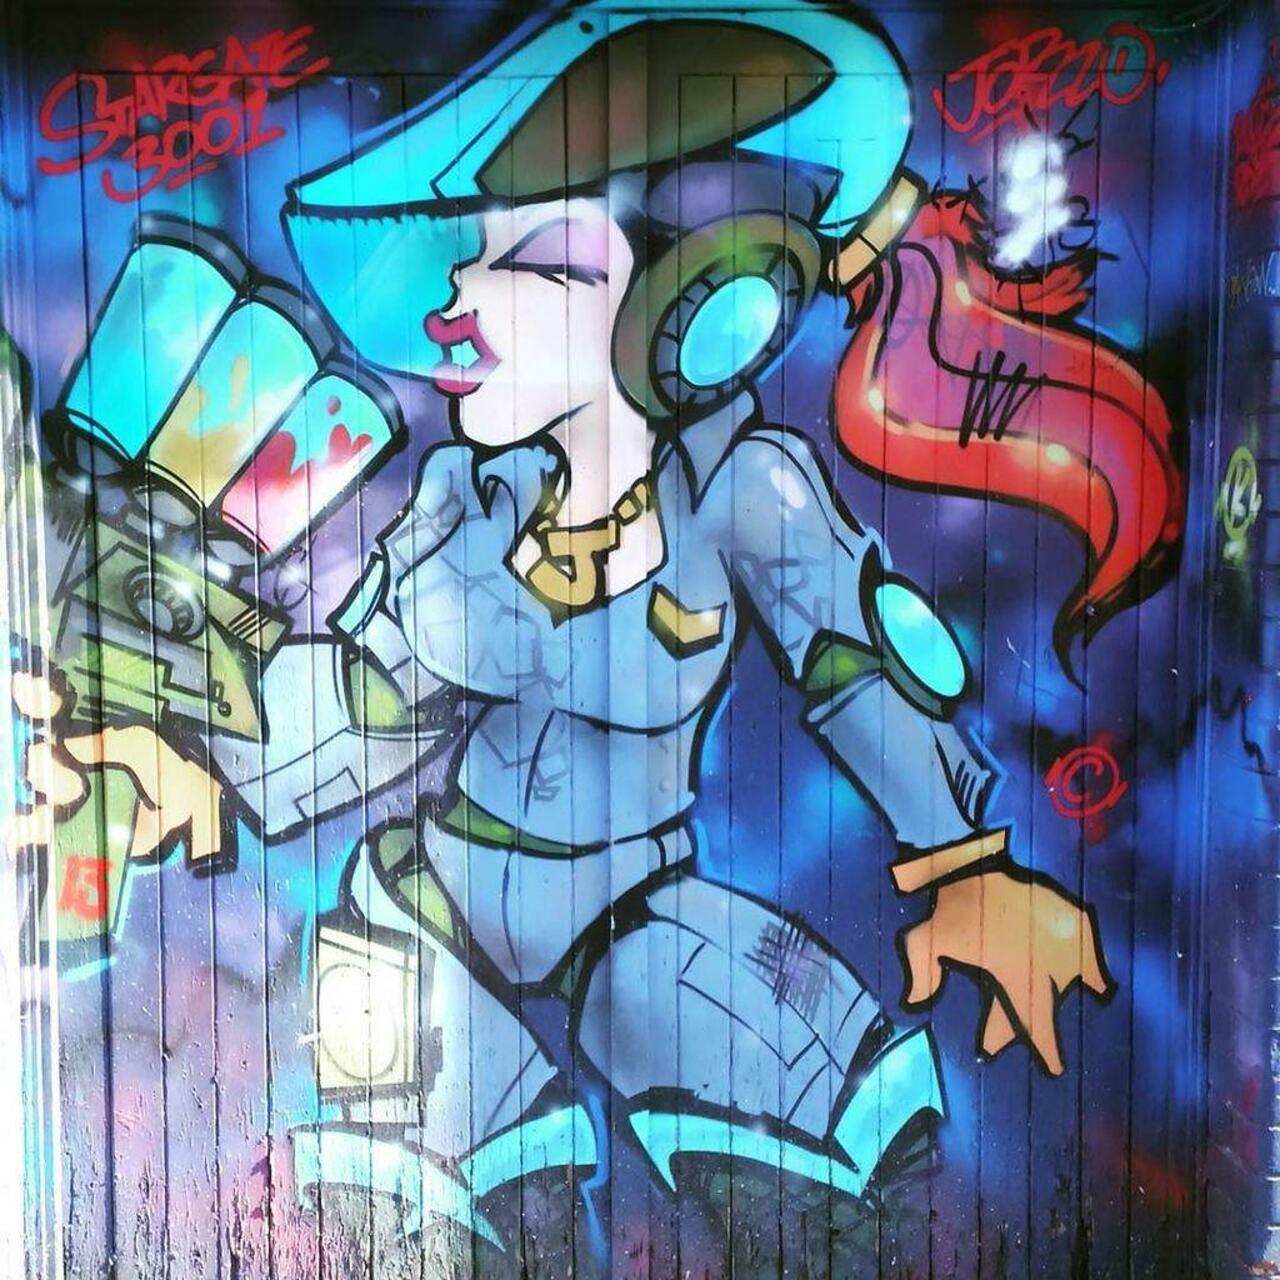 via #be.ky52 "http://bit.ly/1LsxpxG" #graffiti #streetart http://t.co/7V5aaaSTAs